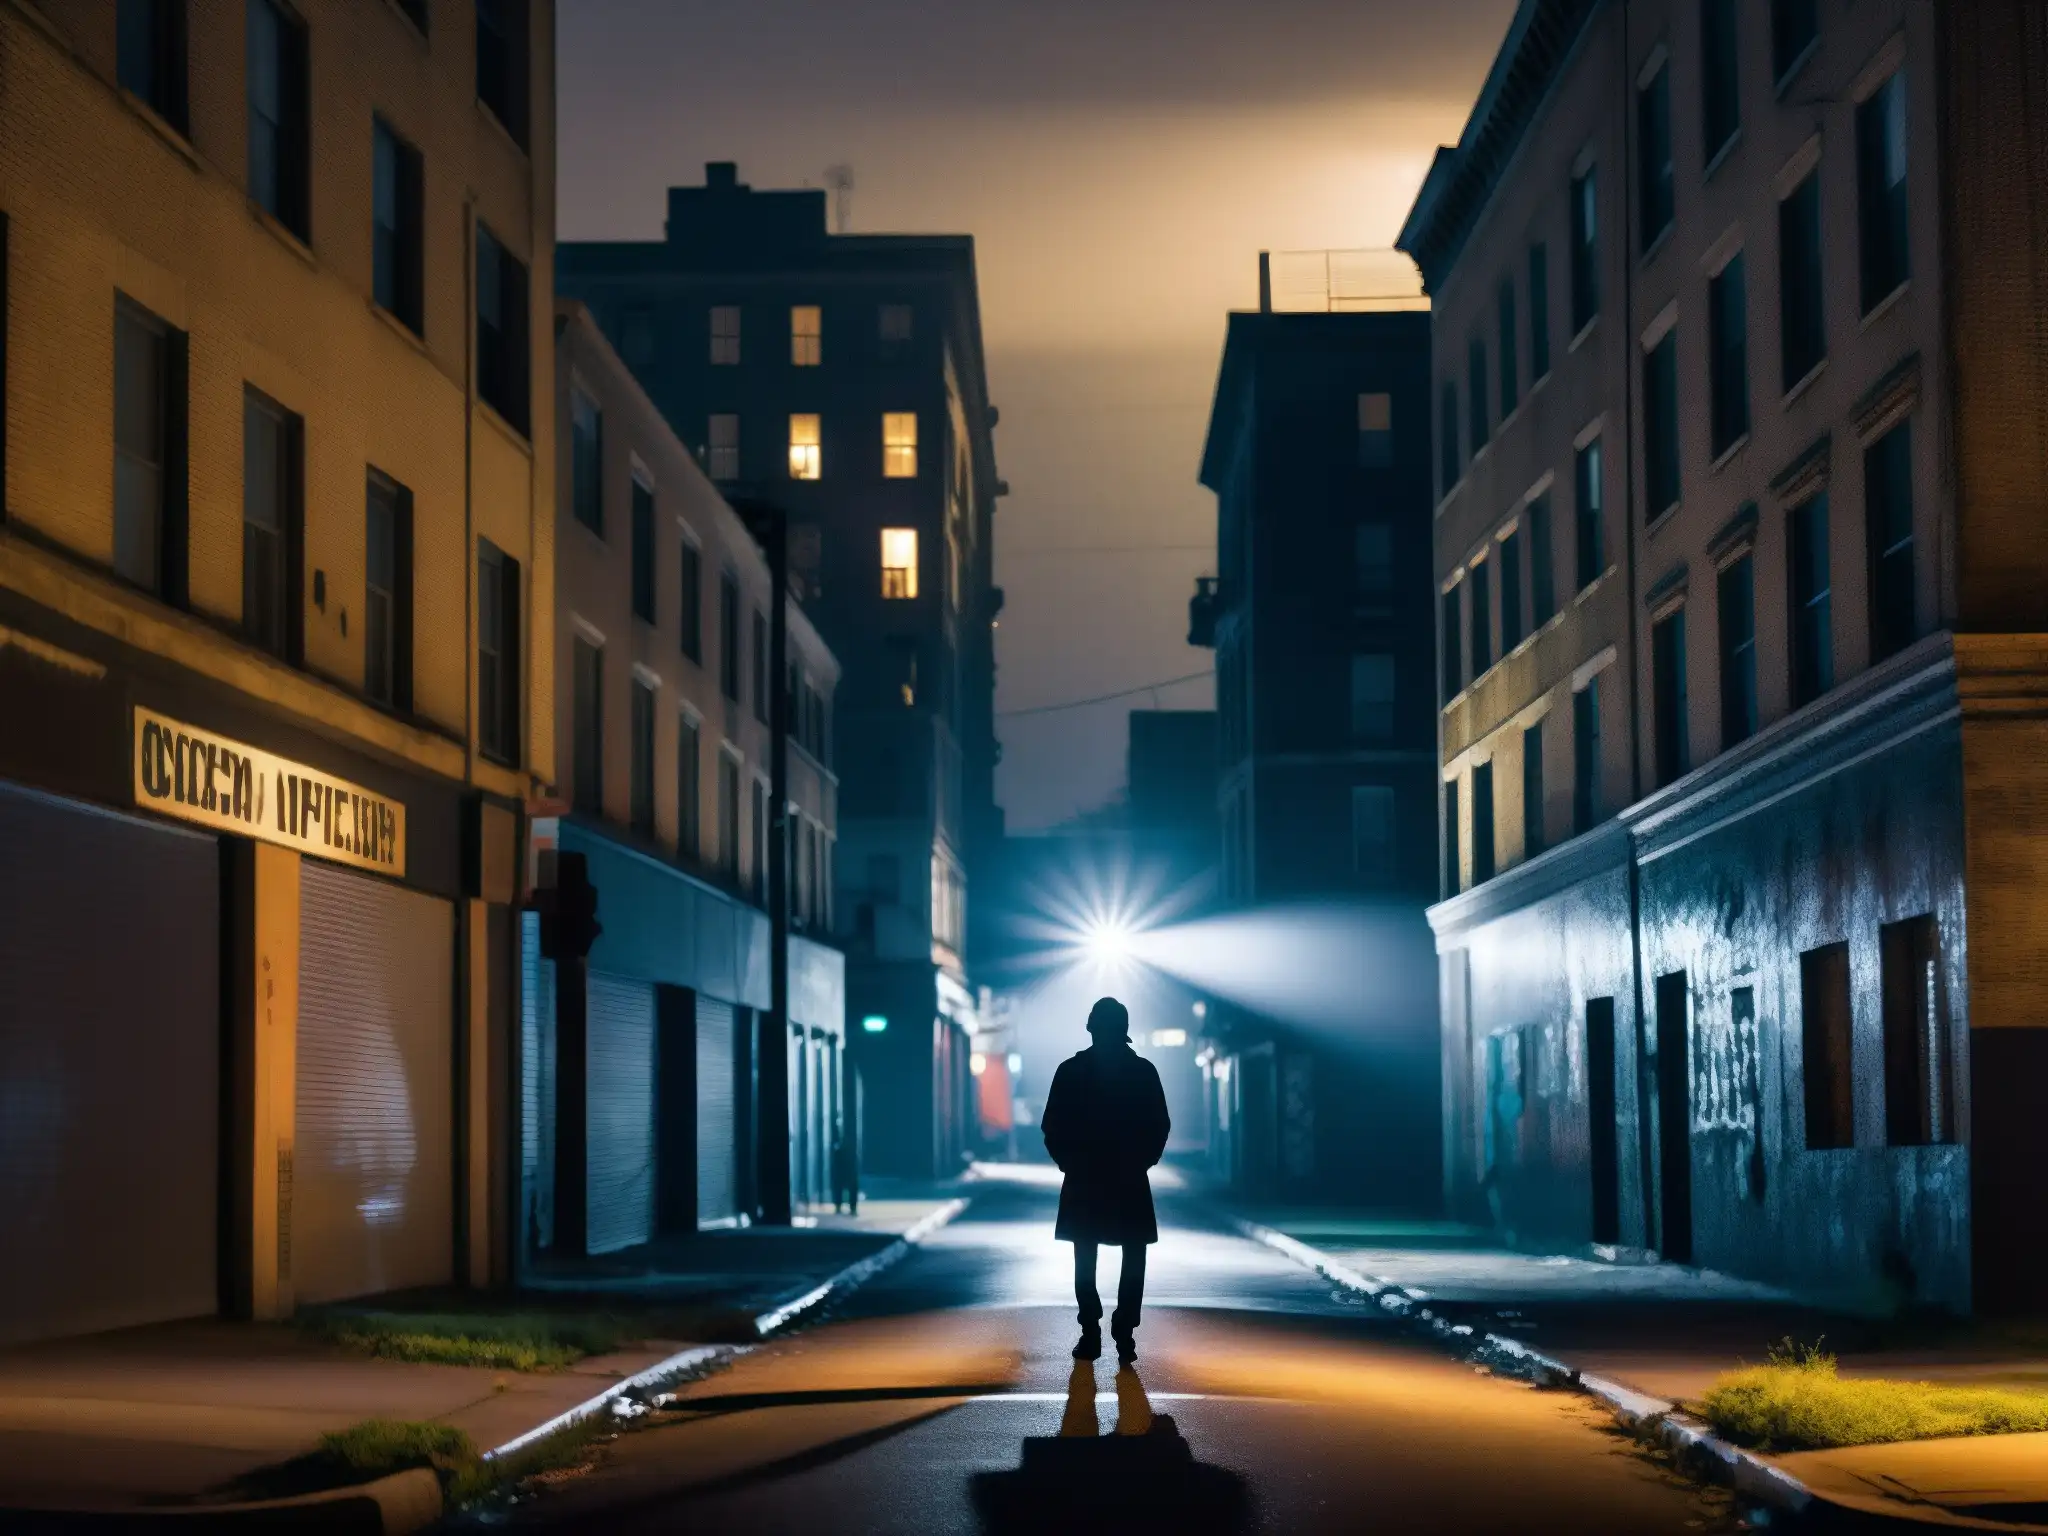 En la oscuridad de la noche, una figura misteriosa bajo la luz de la calle perpetúa leyendas urbanas en la era posmoderna